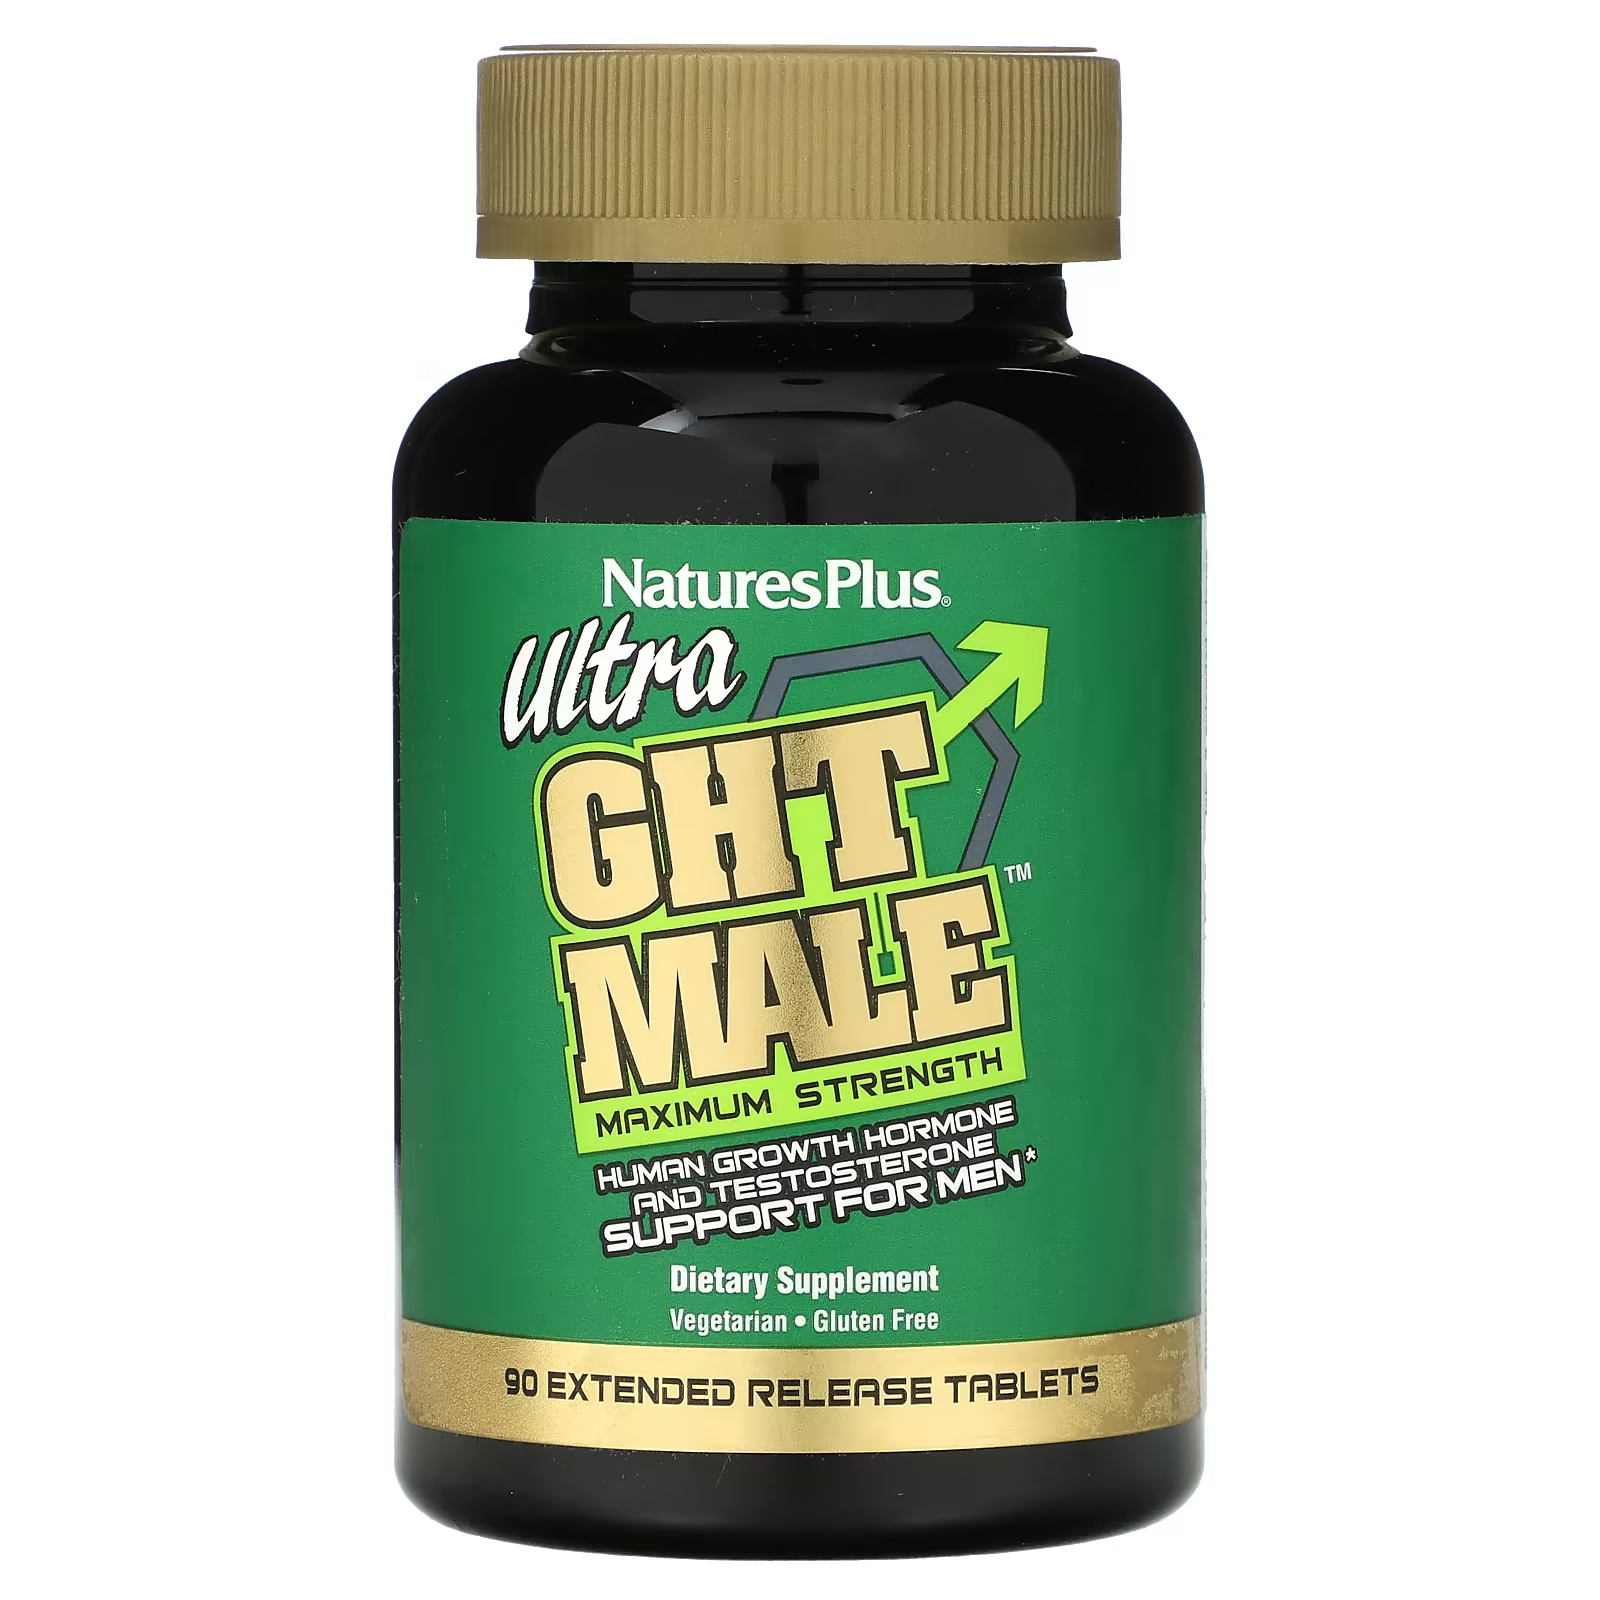 Пищевая добавка NaturesPlus Ultra GHT Male для мужчин, 90 таблеток naturesplus ultra ght male максимальная сила стимулятор для мужчин 90 таблеток с пролонгированным высвобождением